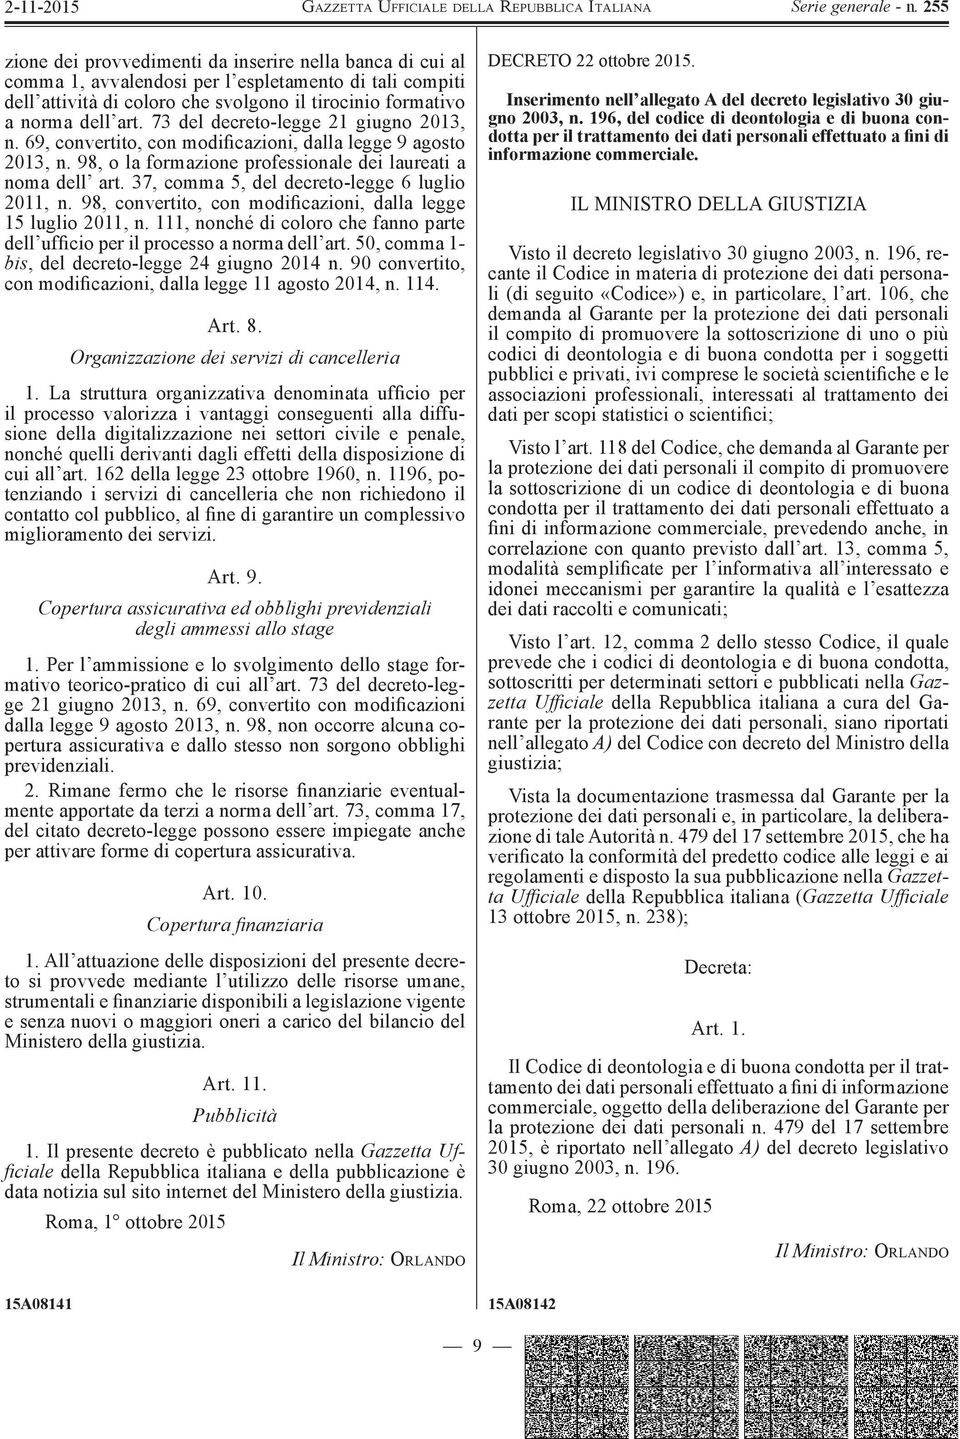 37, comma 5, del decreto-legge 6 luglio 2011, n. 98, convertito, con modificazioni, dalla legge 15 luglio 2011, n. 111, nonché di coloro che fanno parte dell ufficio per il processo a norma dell art.